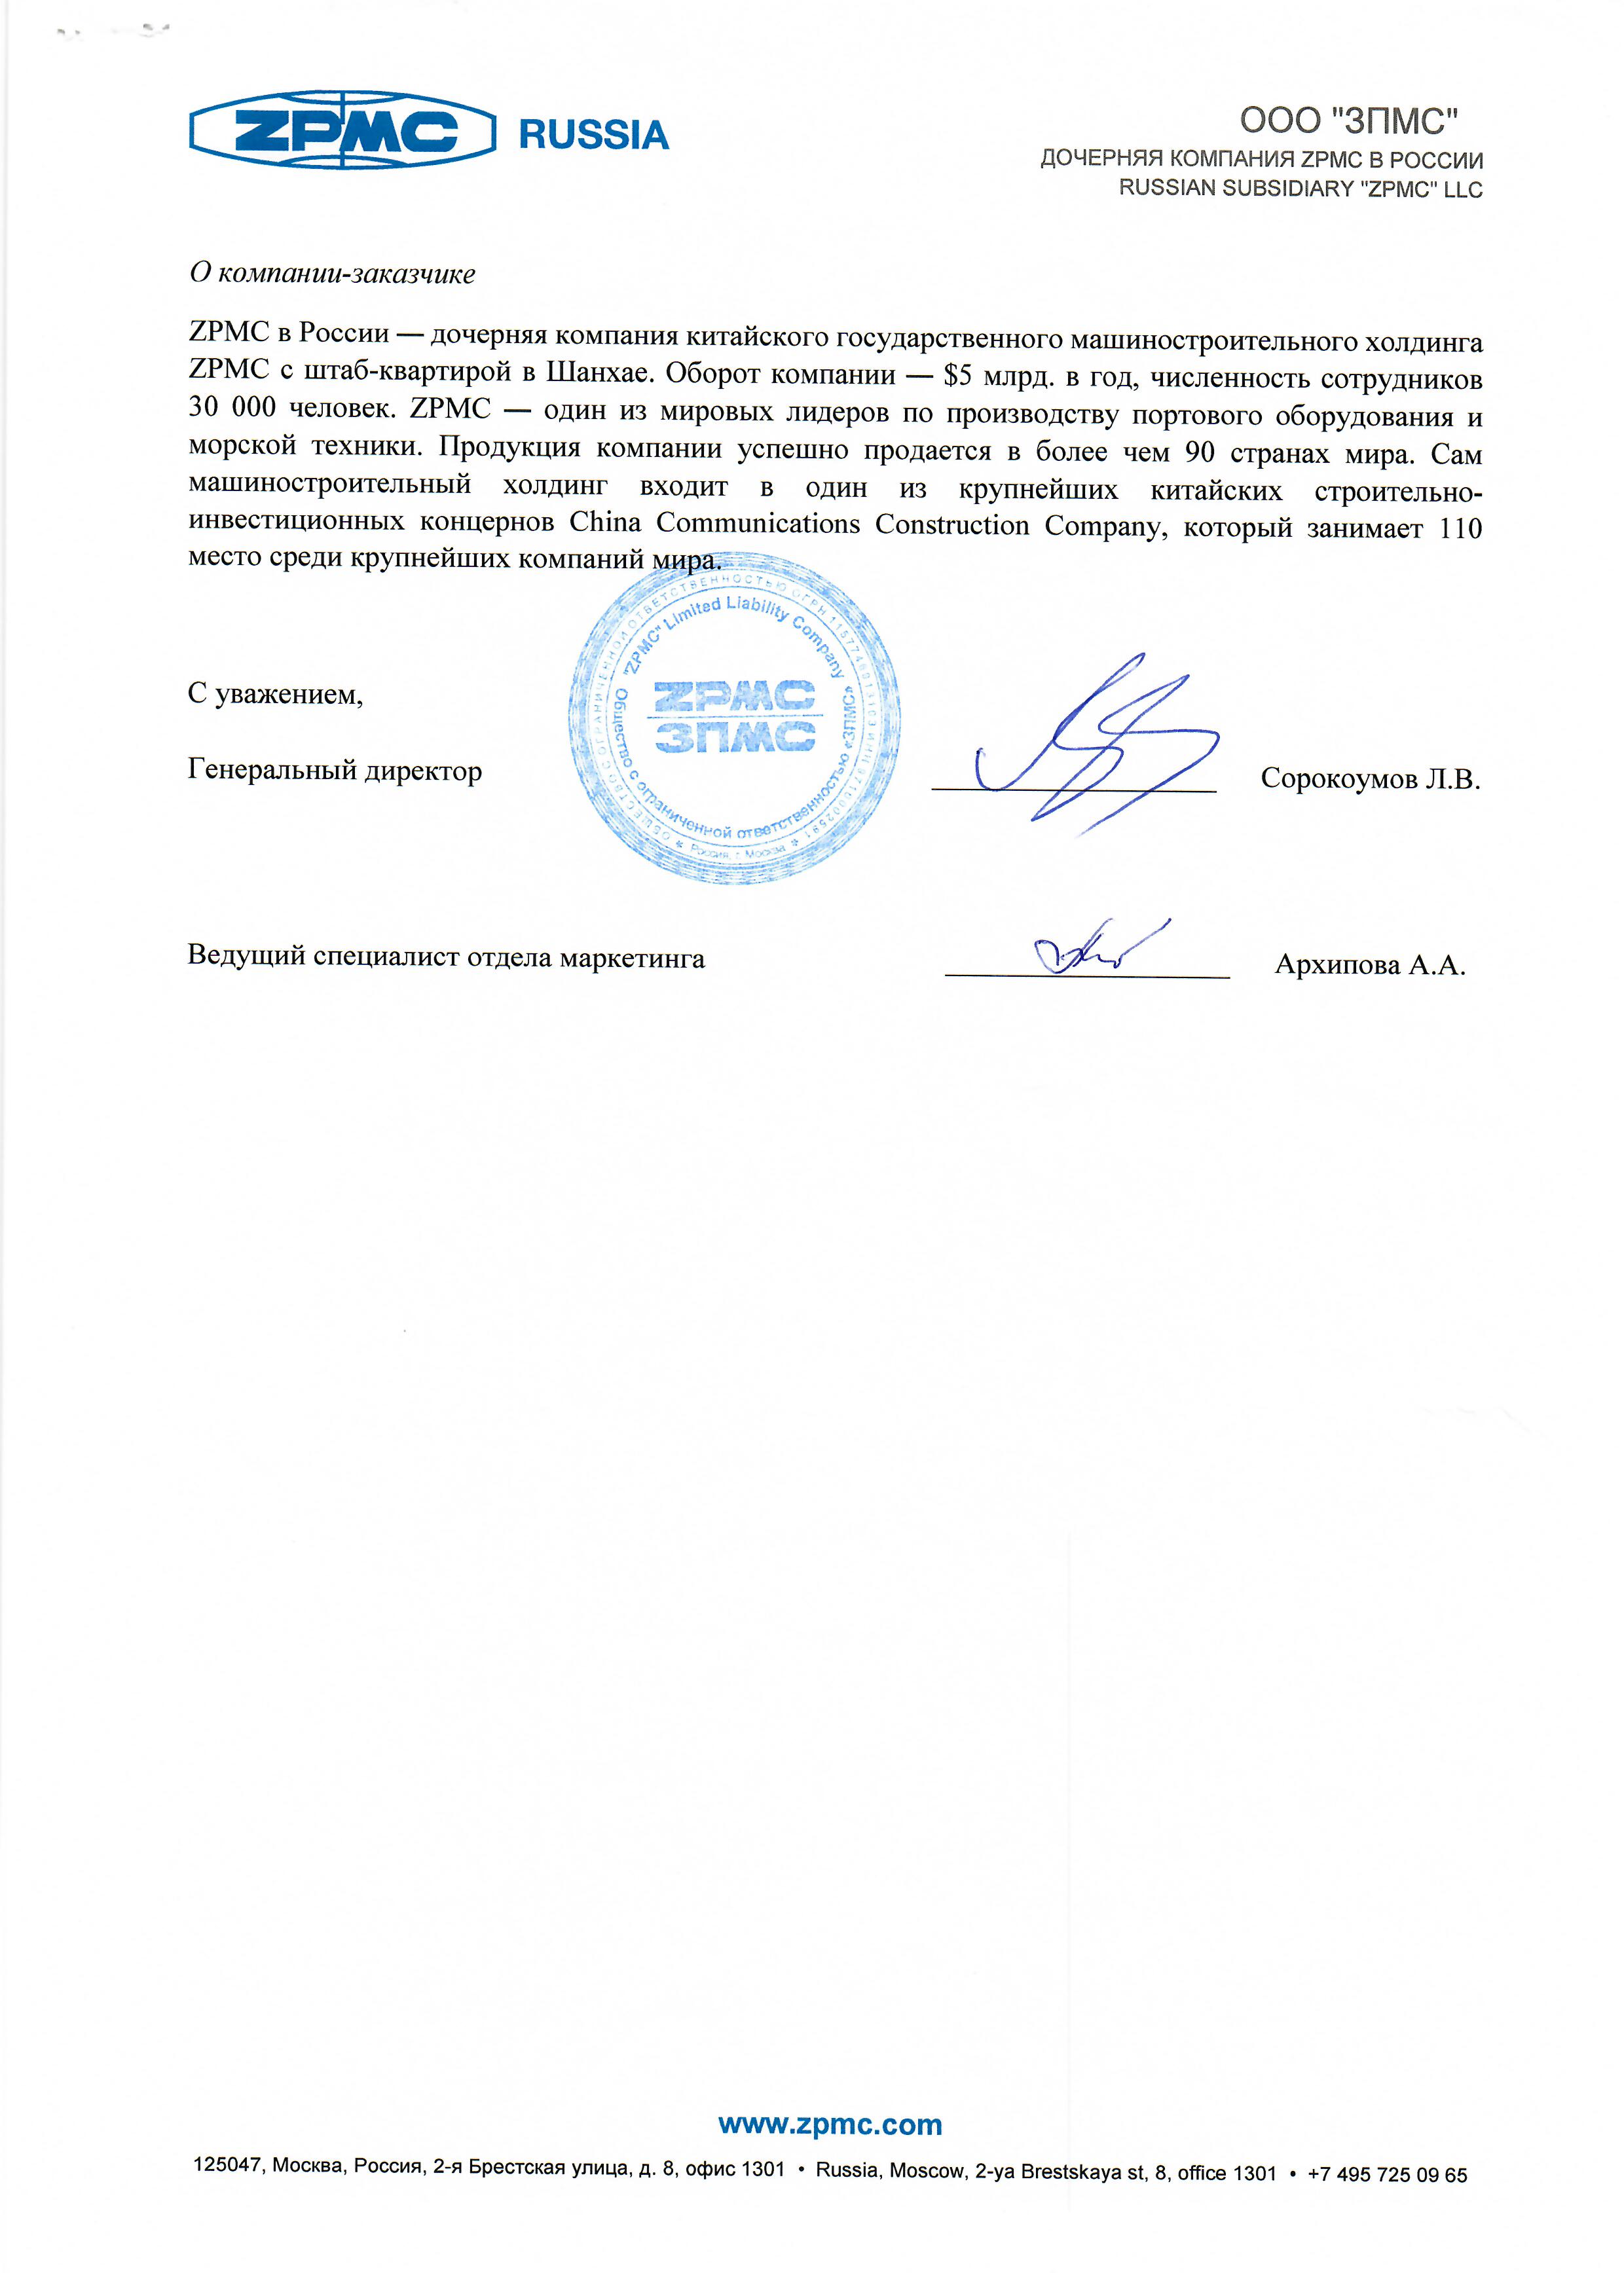 Проект по созданию ИТ-инфраструктуры для российского представительства глобальной компании — ZPMC страница 2